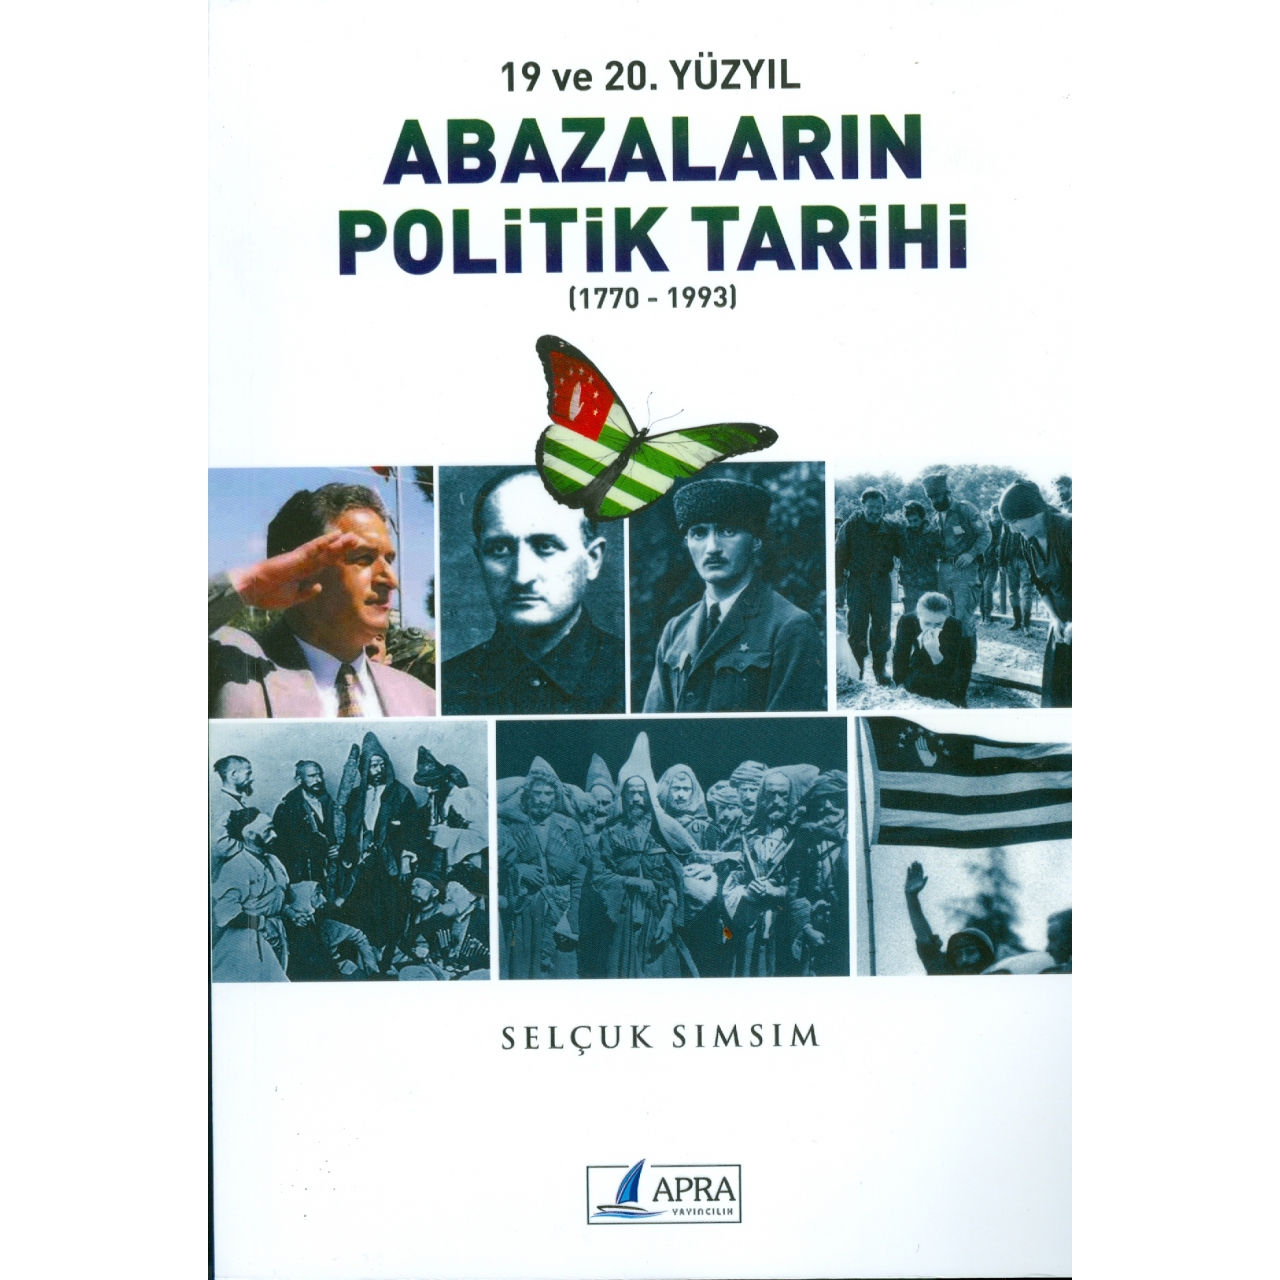 19 ve 20. Yüzyıl Abazaların Politik Tarihi (1770-1993)